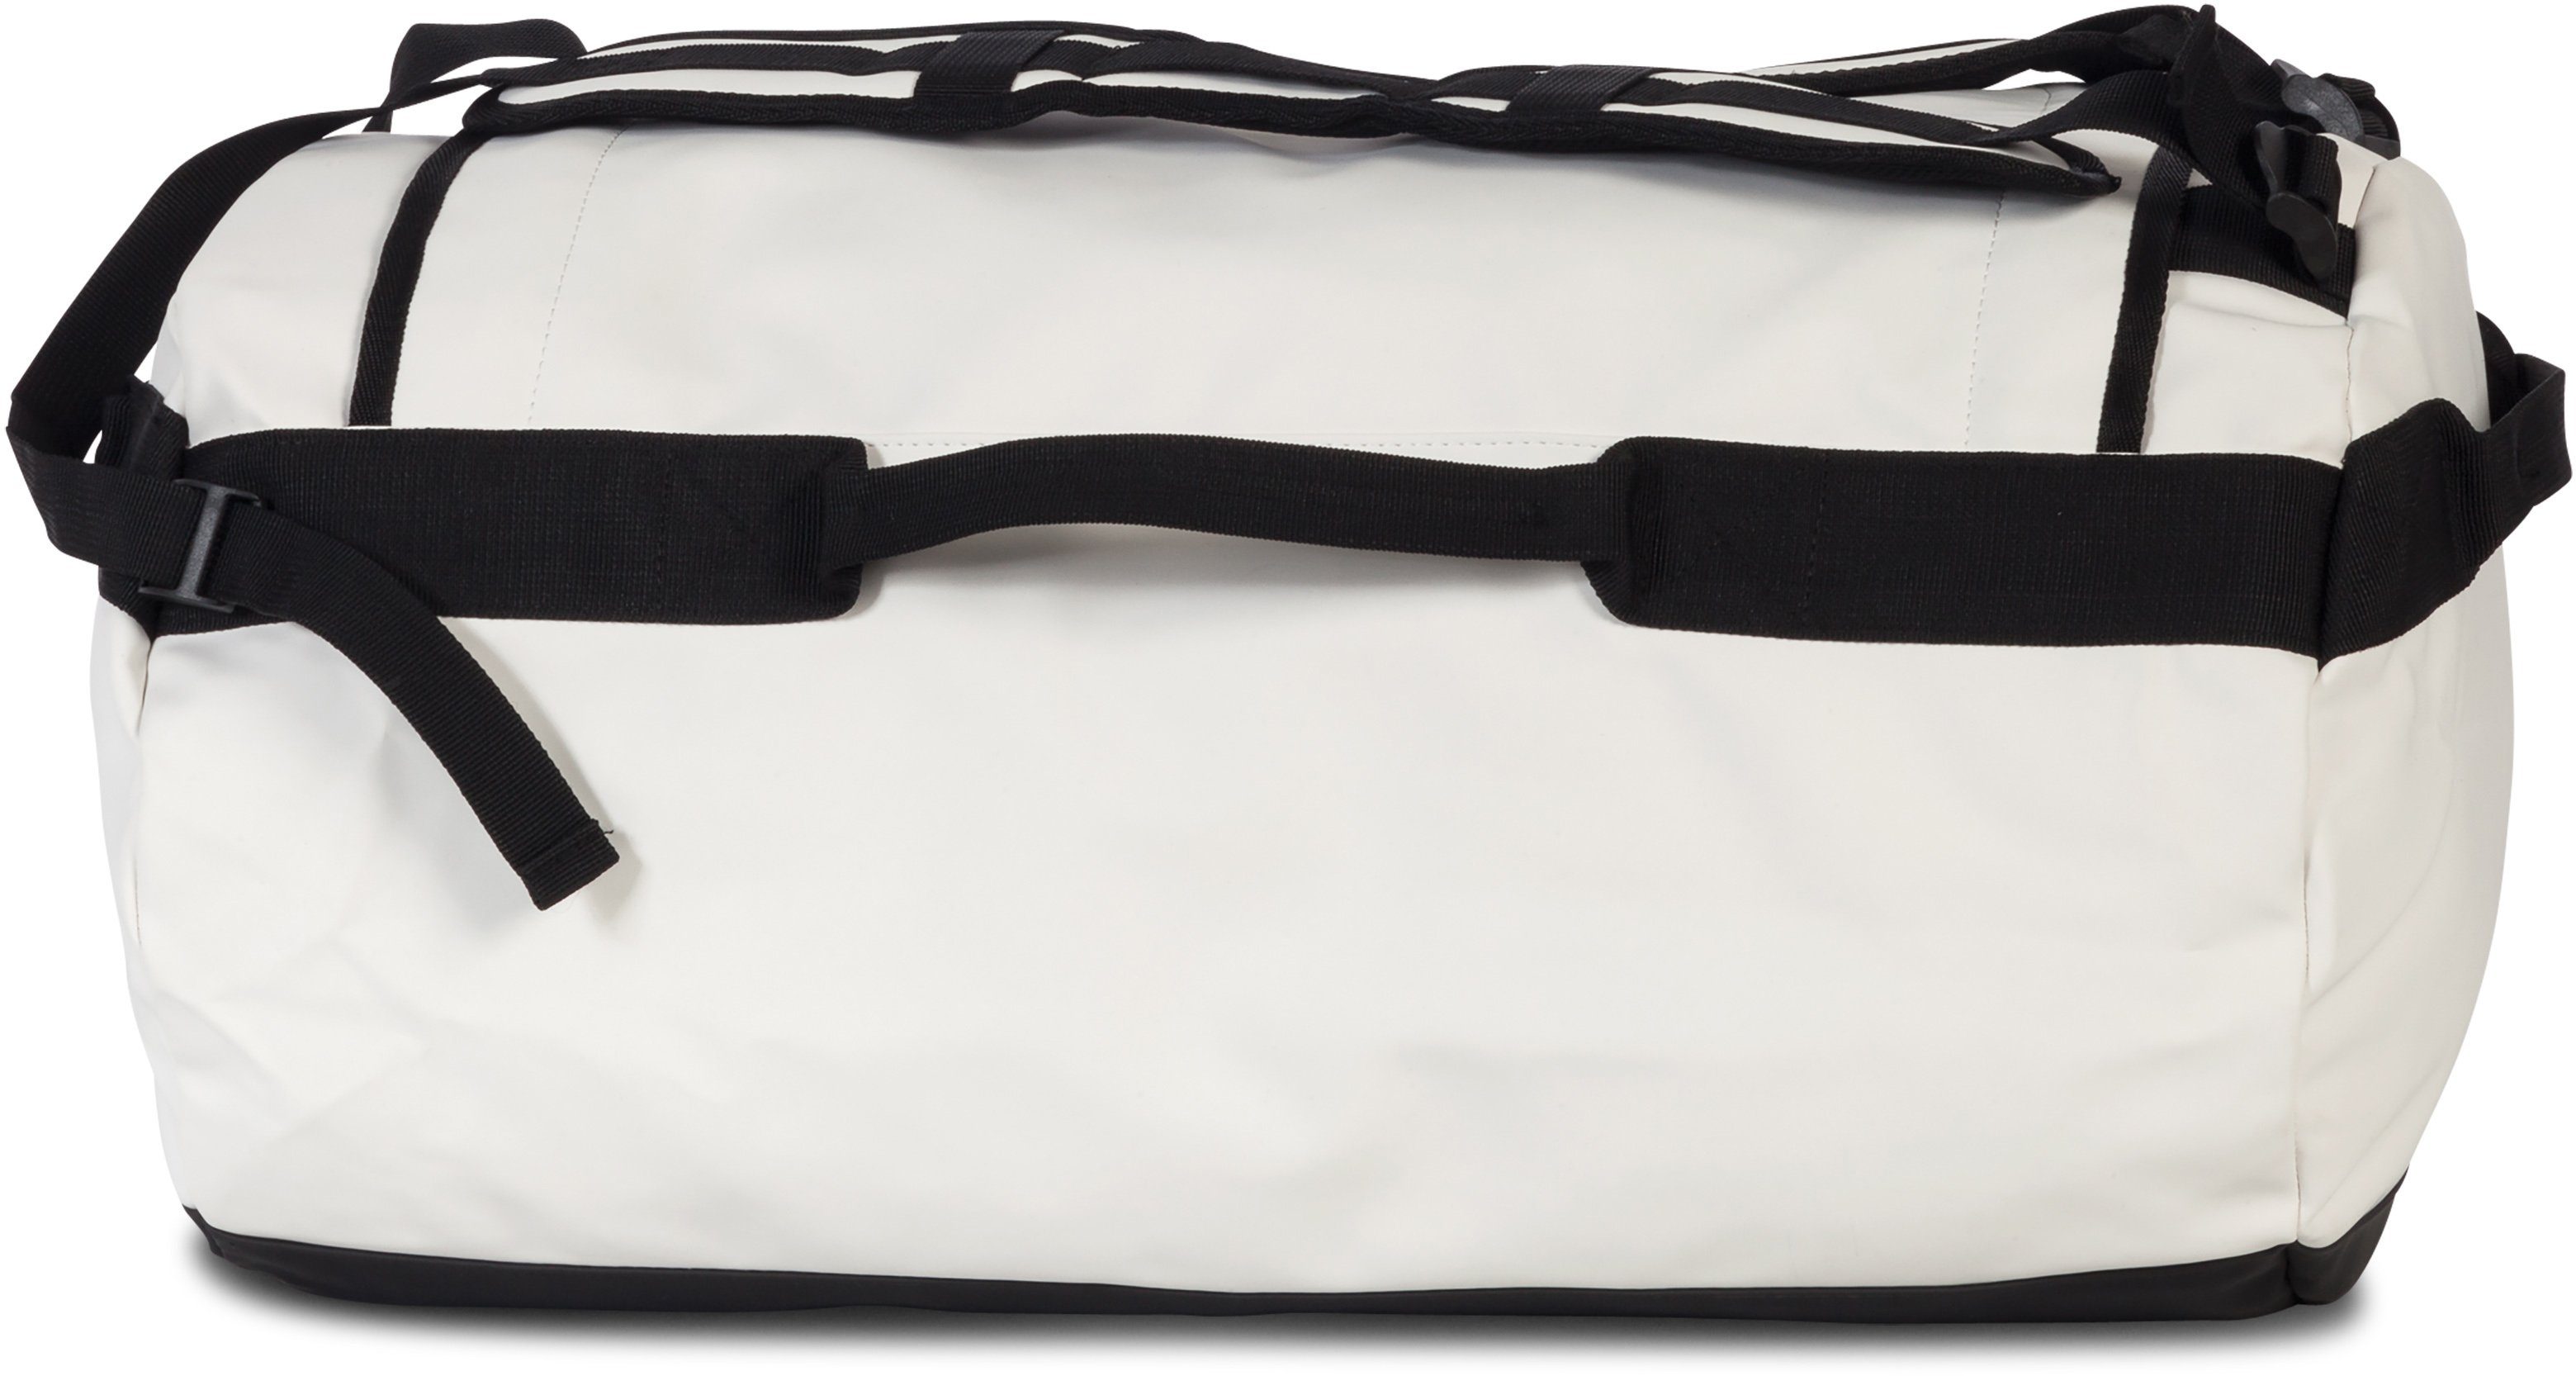 Bench. Reisetasche Hydro, weiß, mit Material Rucksackfunktion; aus weiss wasserabweisendem